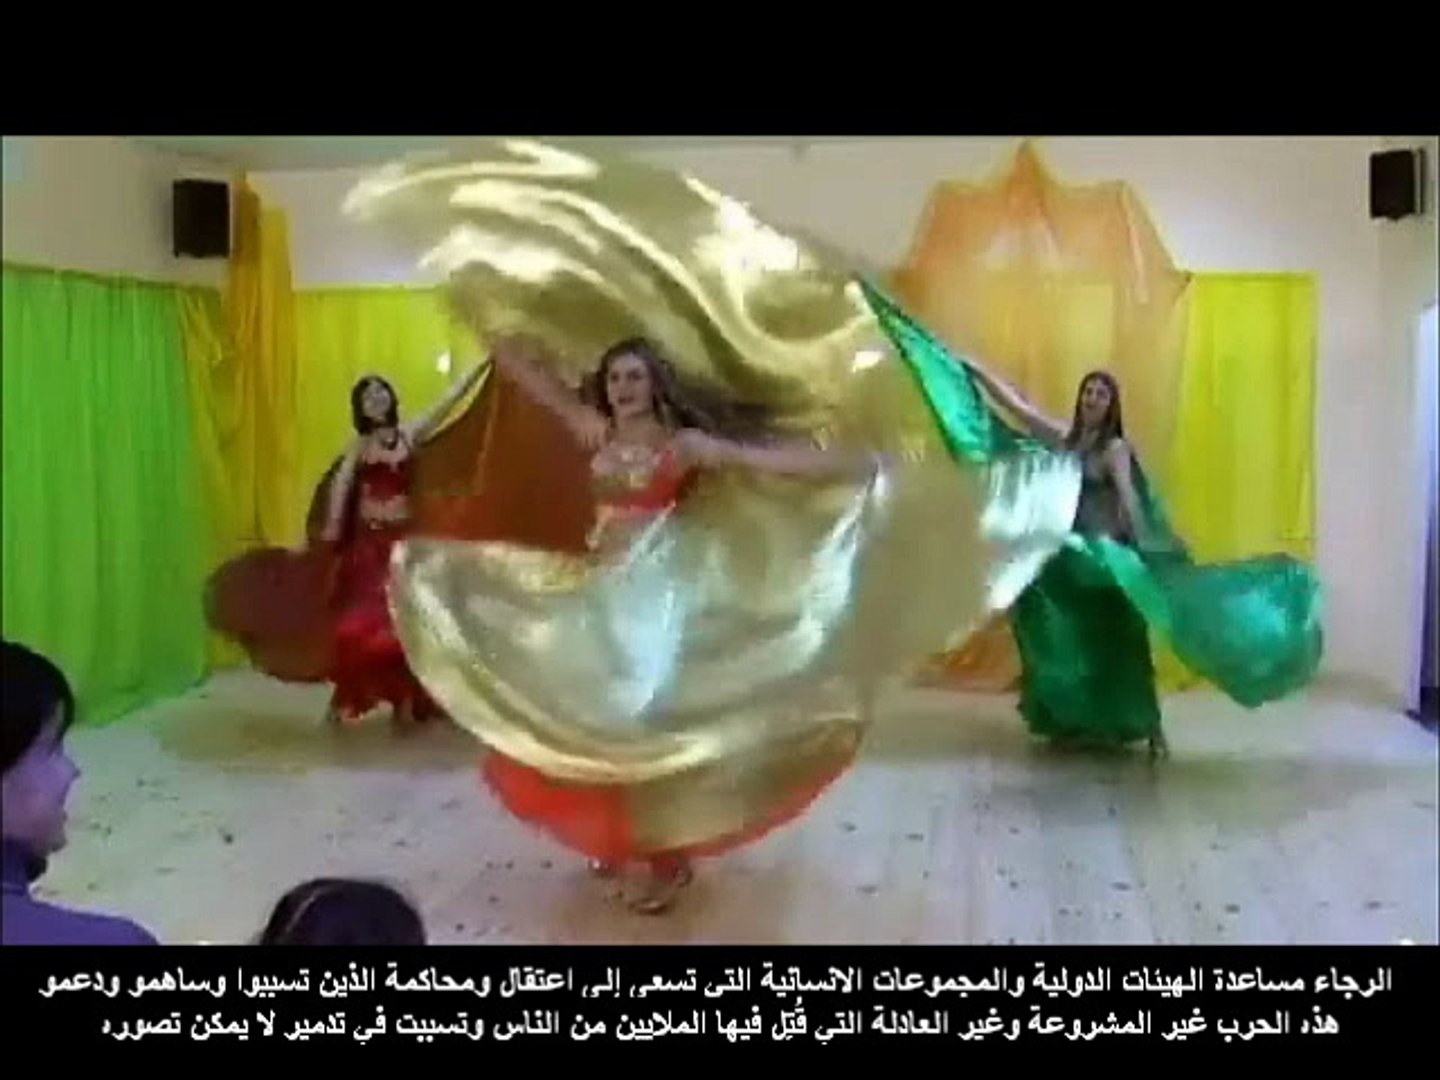 اغنية عراقية رائعة سعدون جابر مع رقص شرقي اروع - video Dailymotion